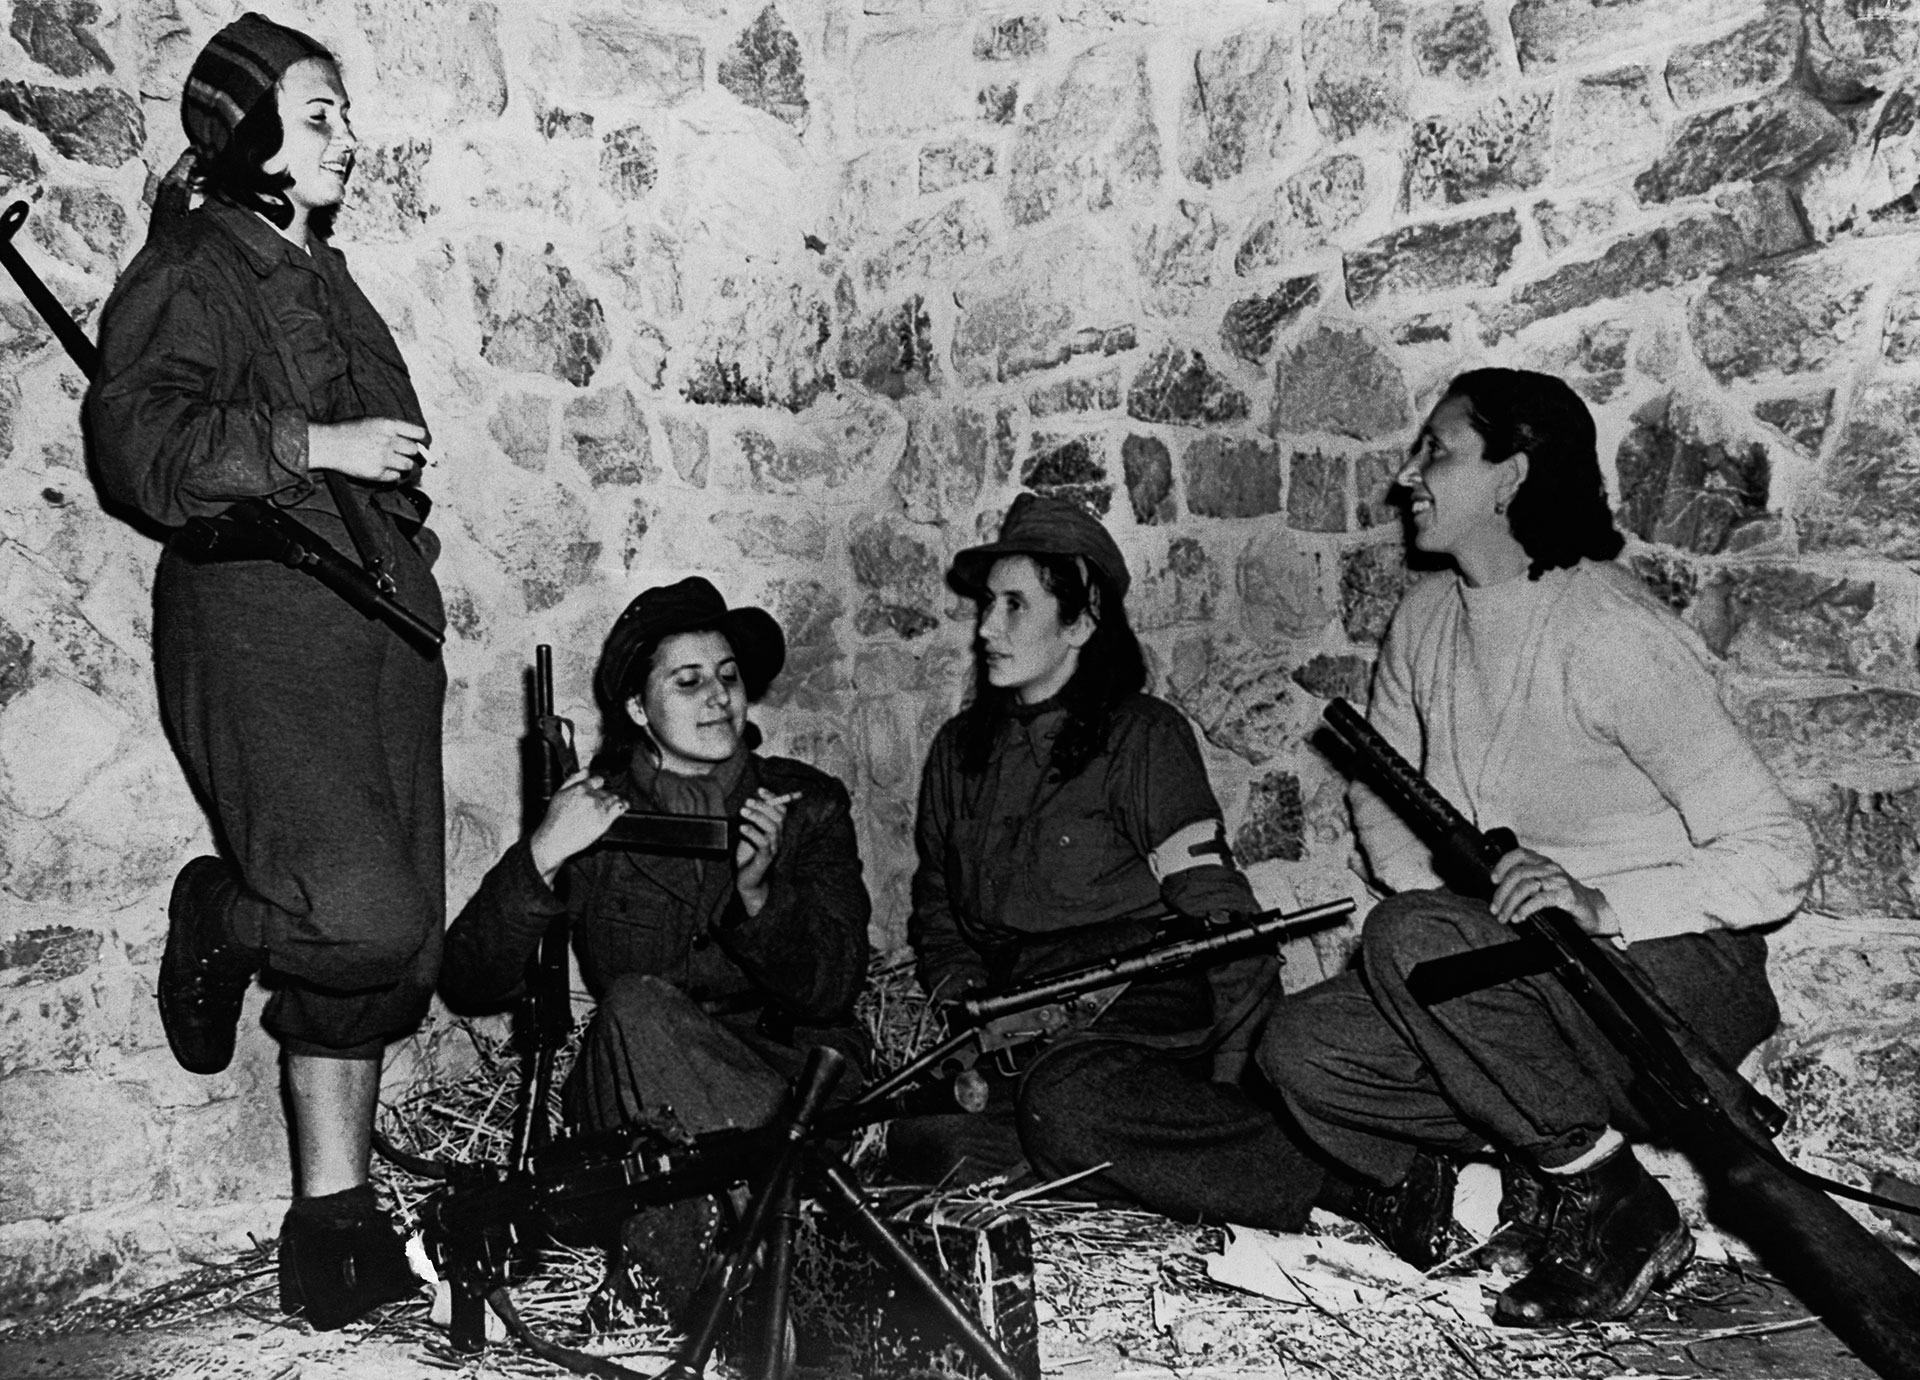 イタリアのナチファシズムに対する抵抗で主演した女性たちの忘れられた物語 Infobae